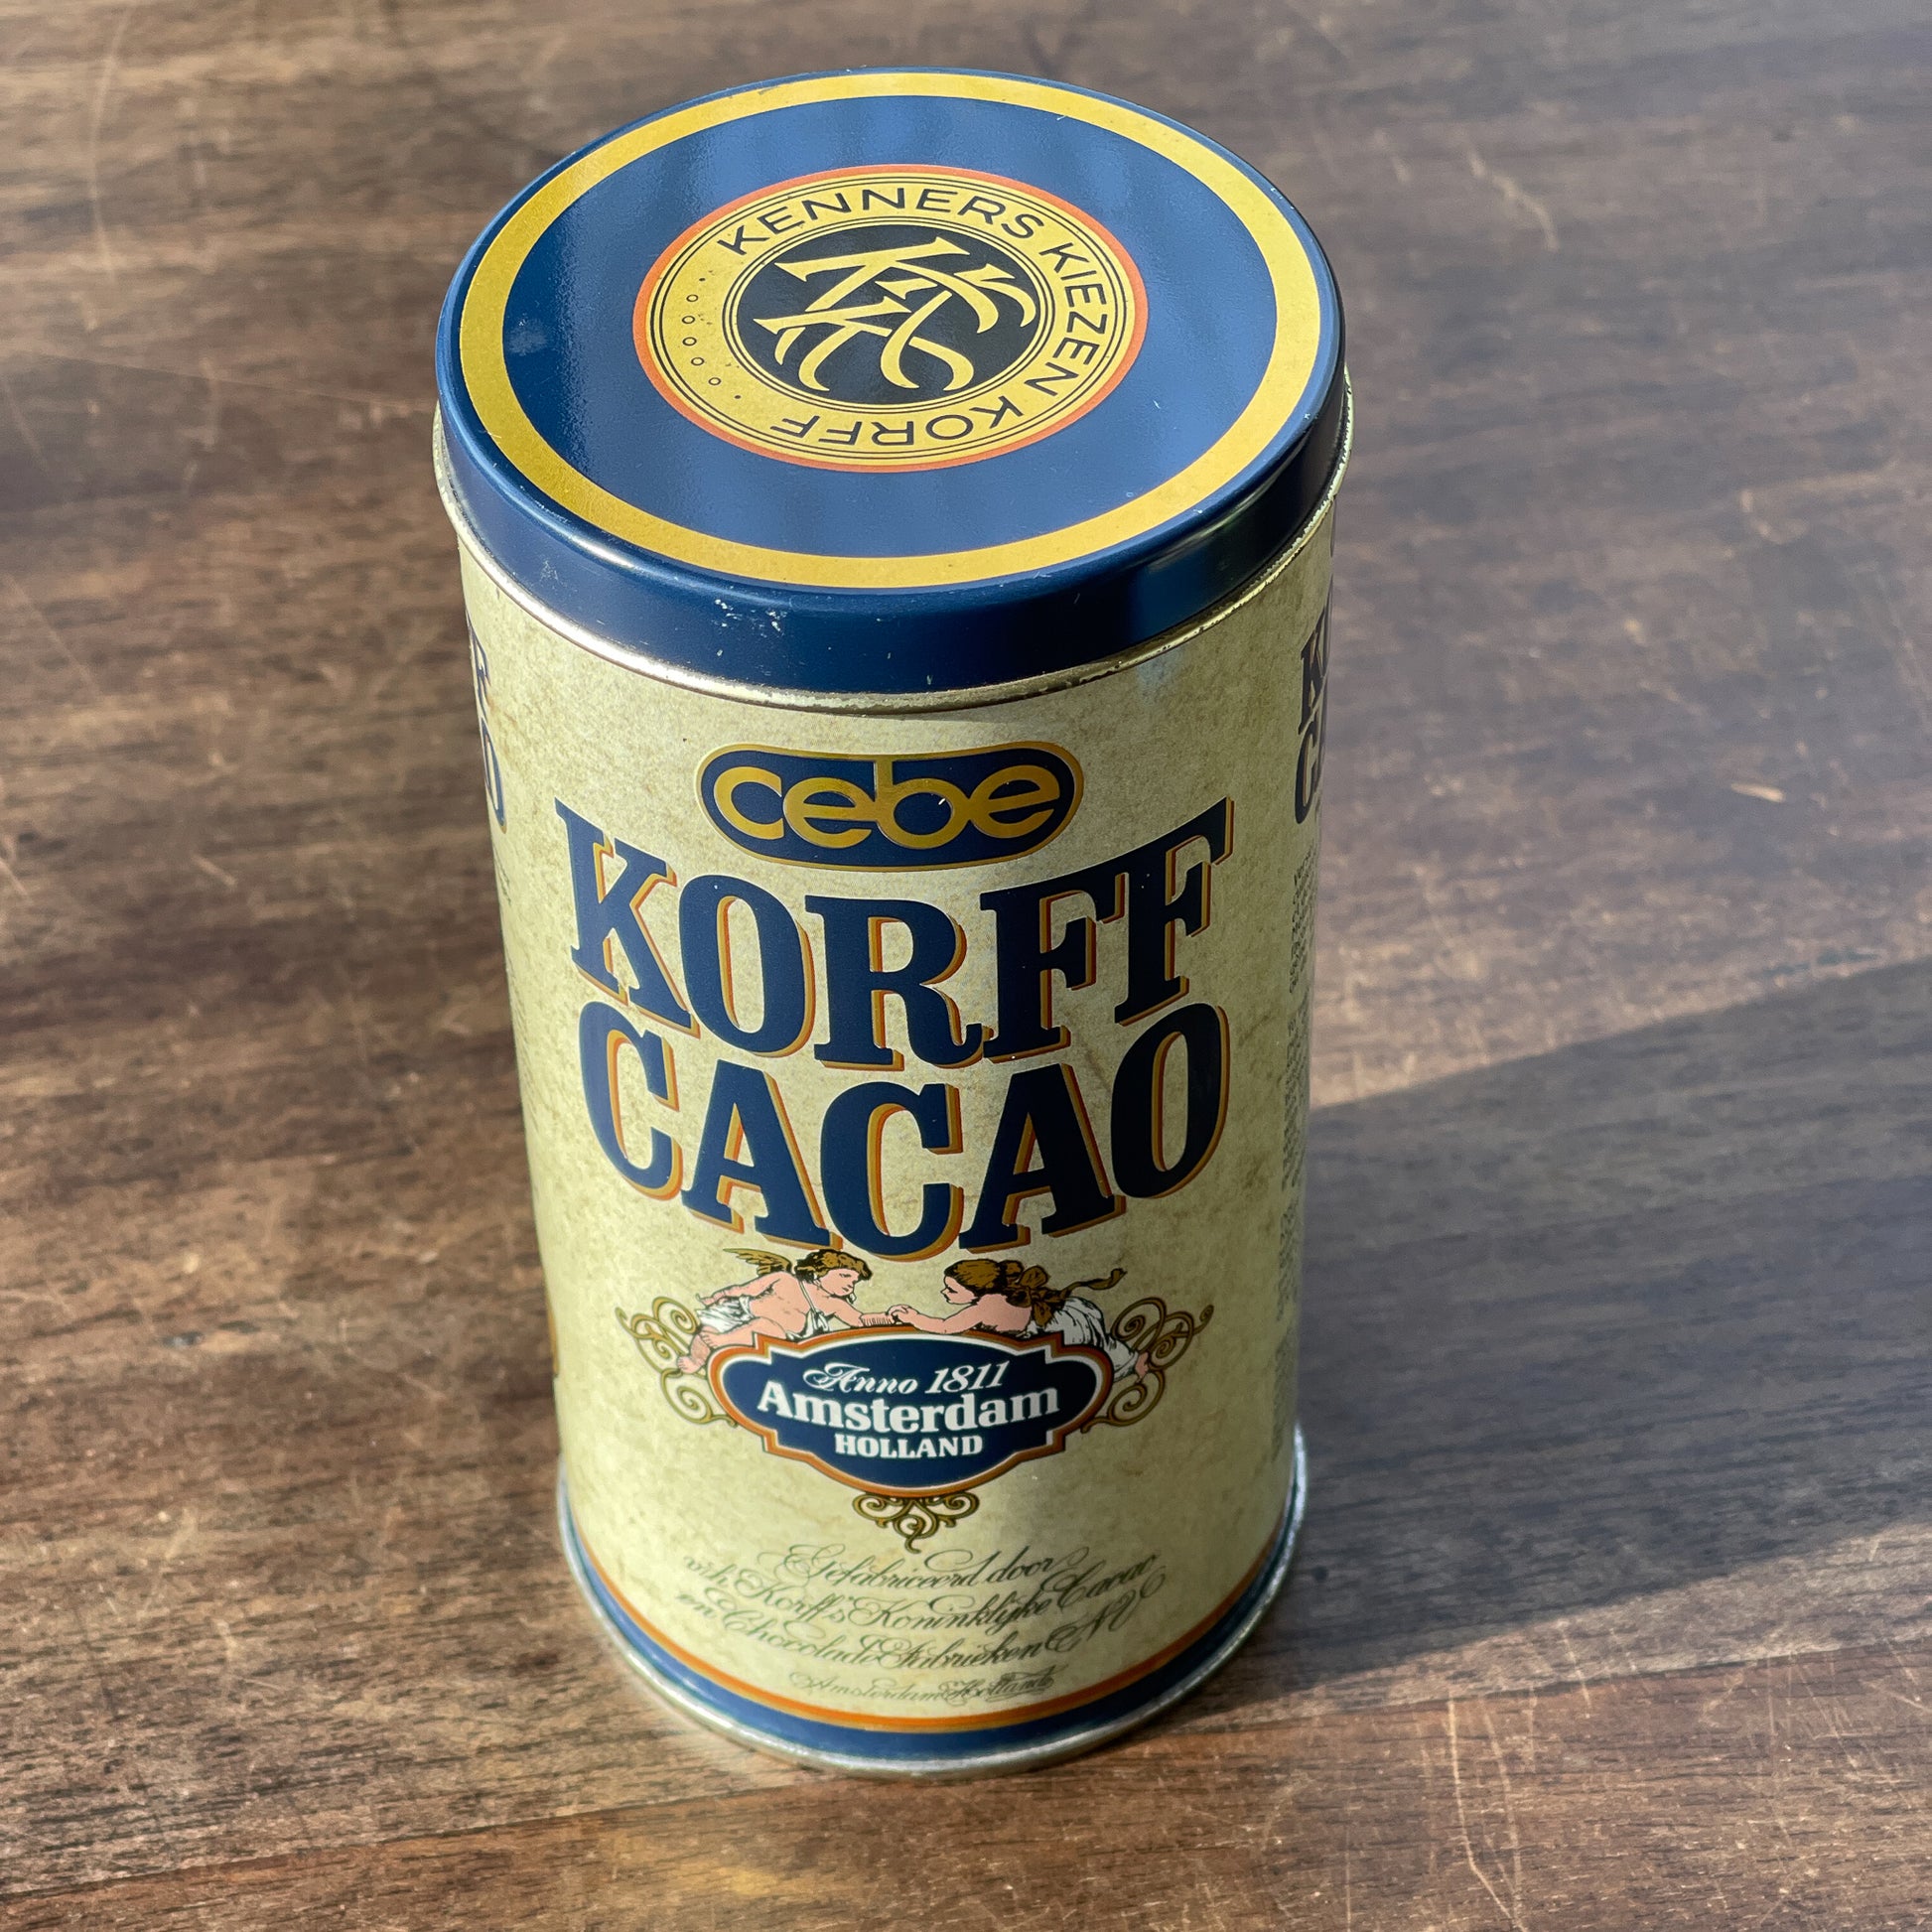 Korff Cacao Blik - Bamestra Curiosa